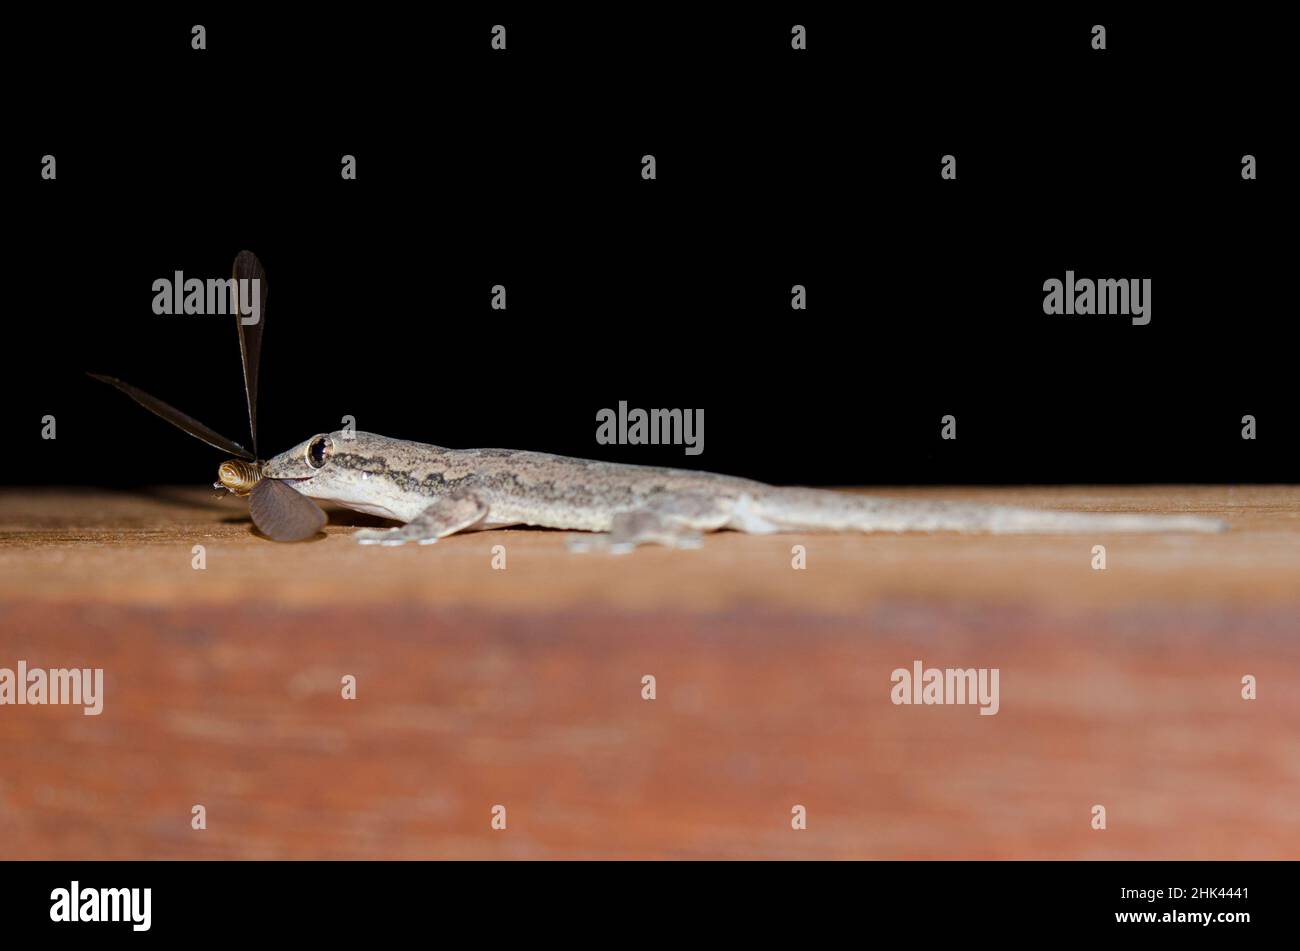 Flat-tailed House Gecko, Hemidactylus platyurus, eating Flying Ant, Formicidae Family, Pering, Gianyar, Bali, Indonesia Stock Photo